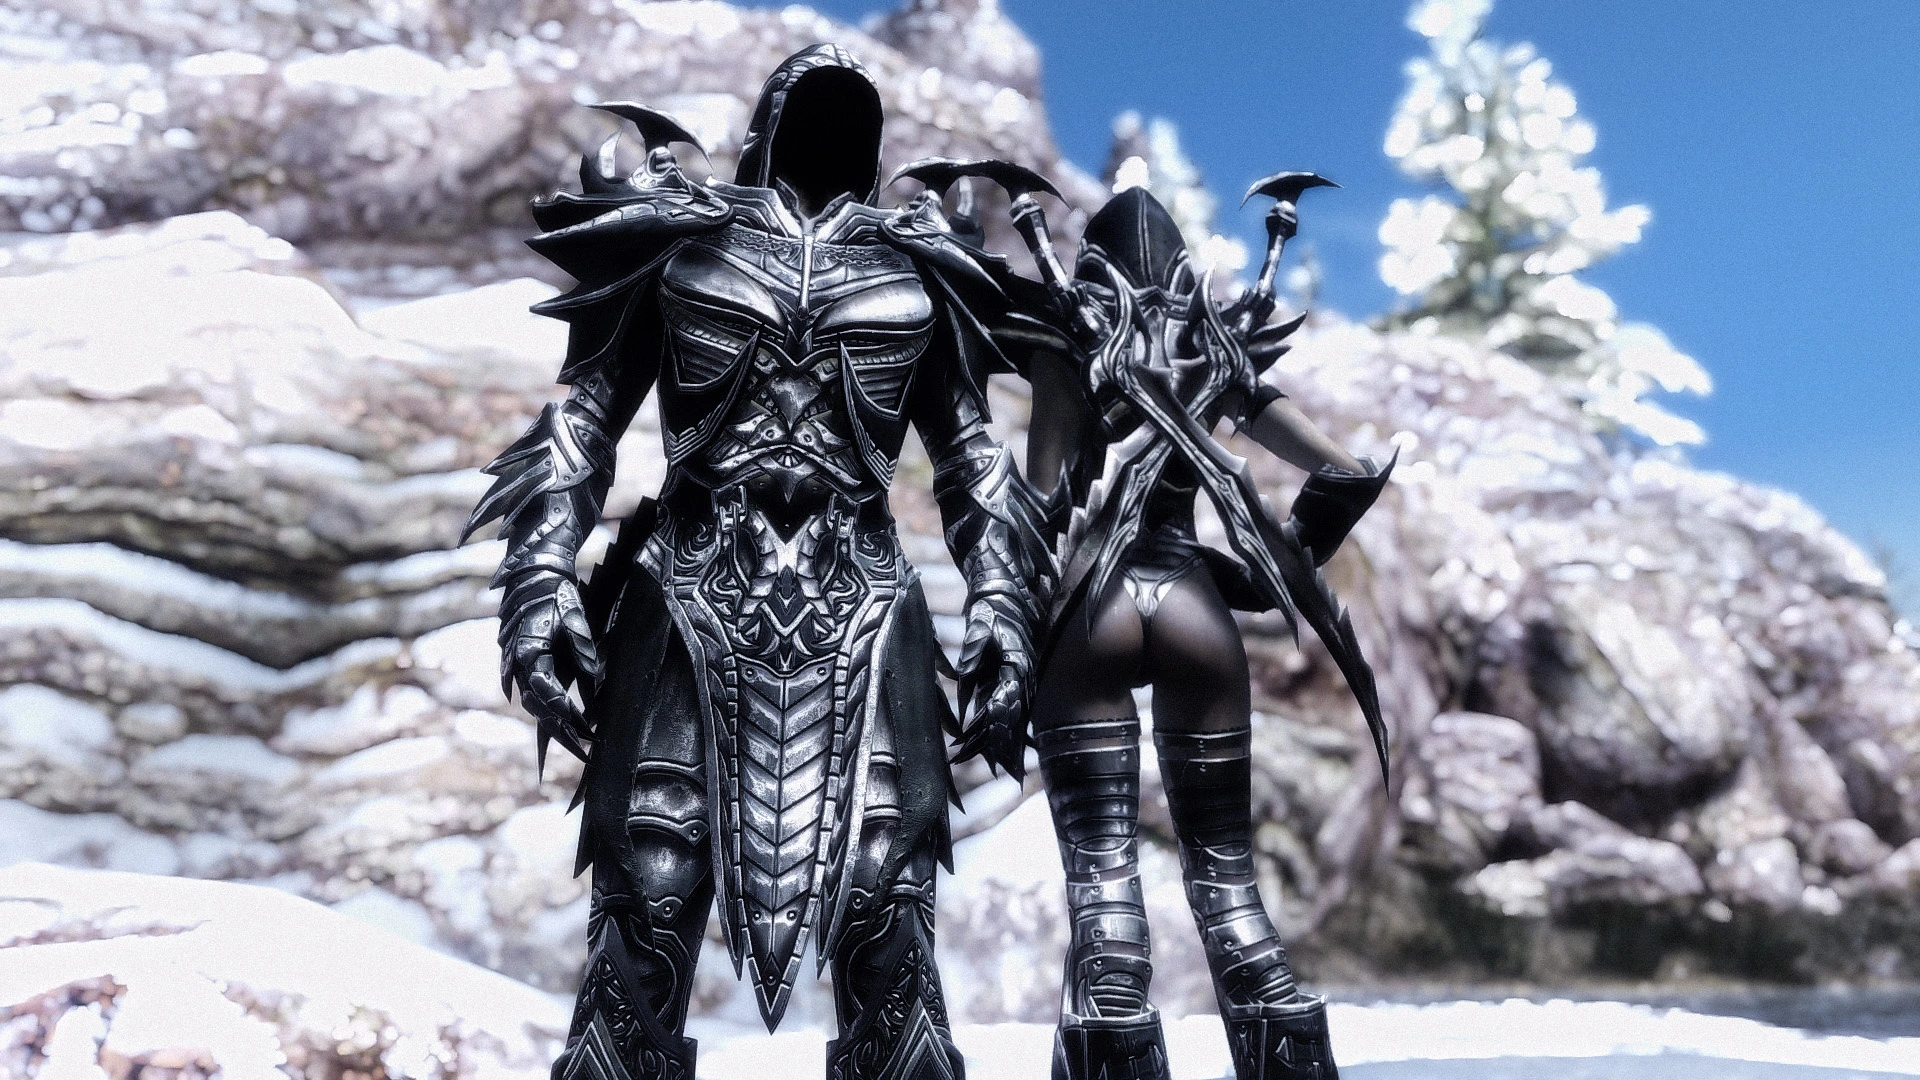 daedric reaper armor at skyrim nexus mods and community skyrim armor skyrim ...